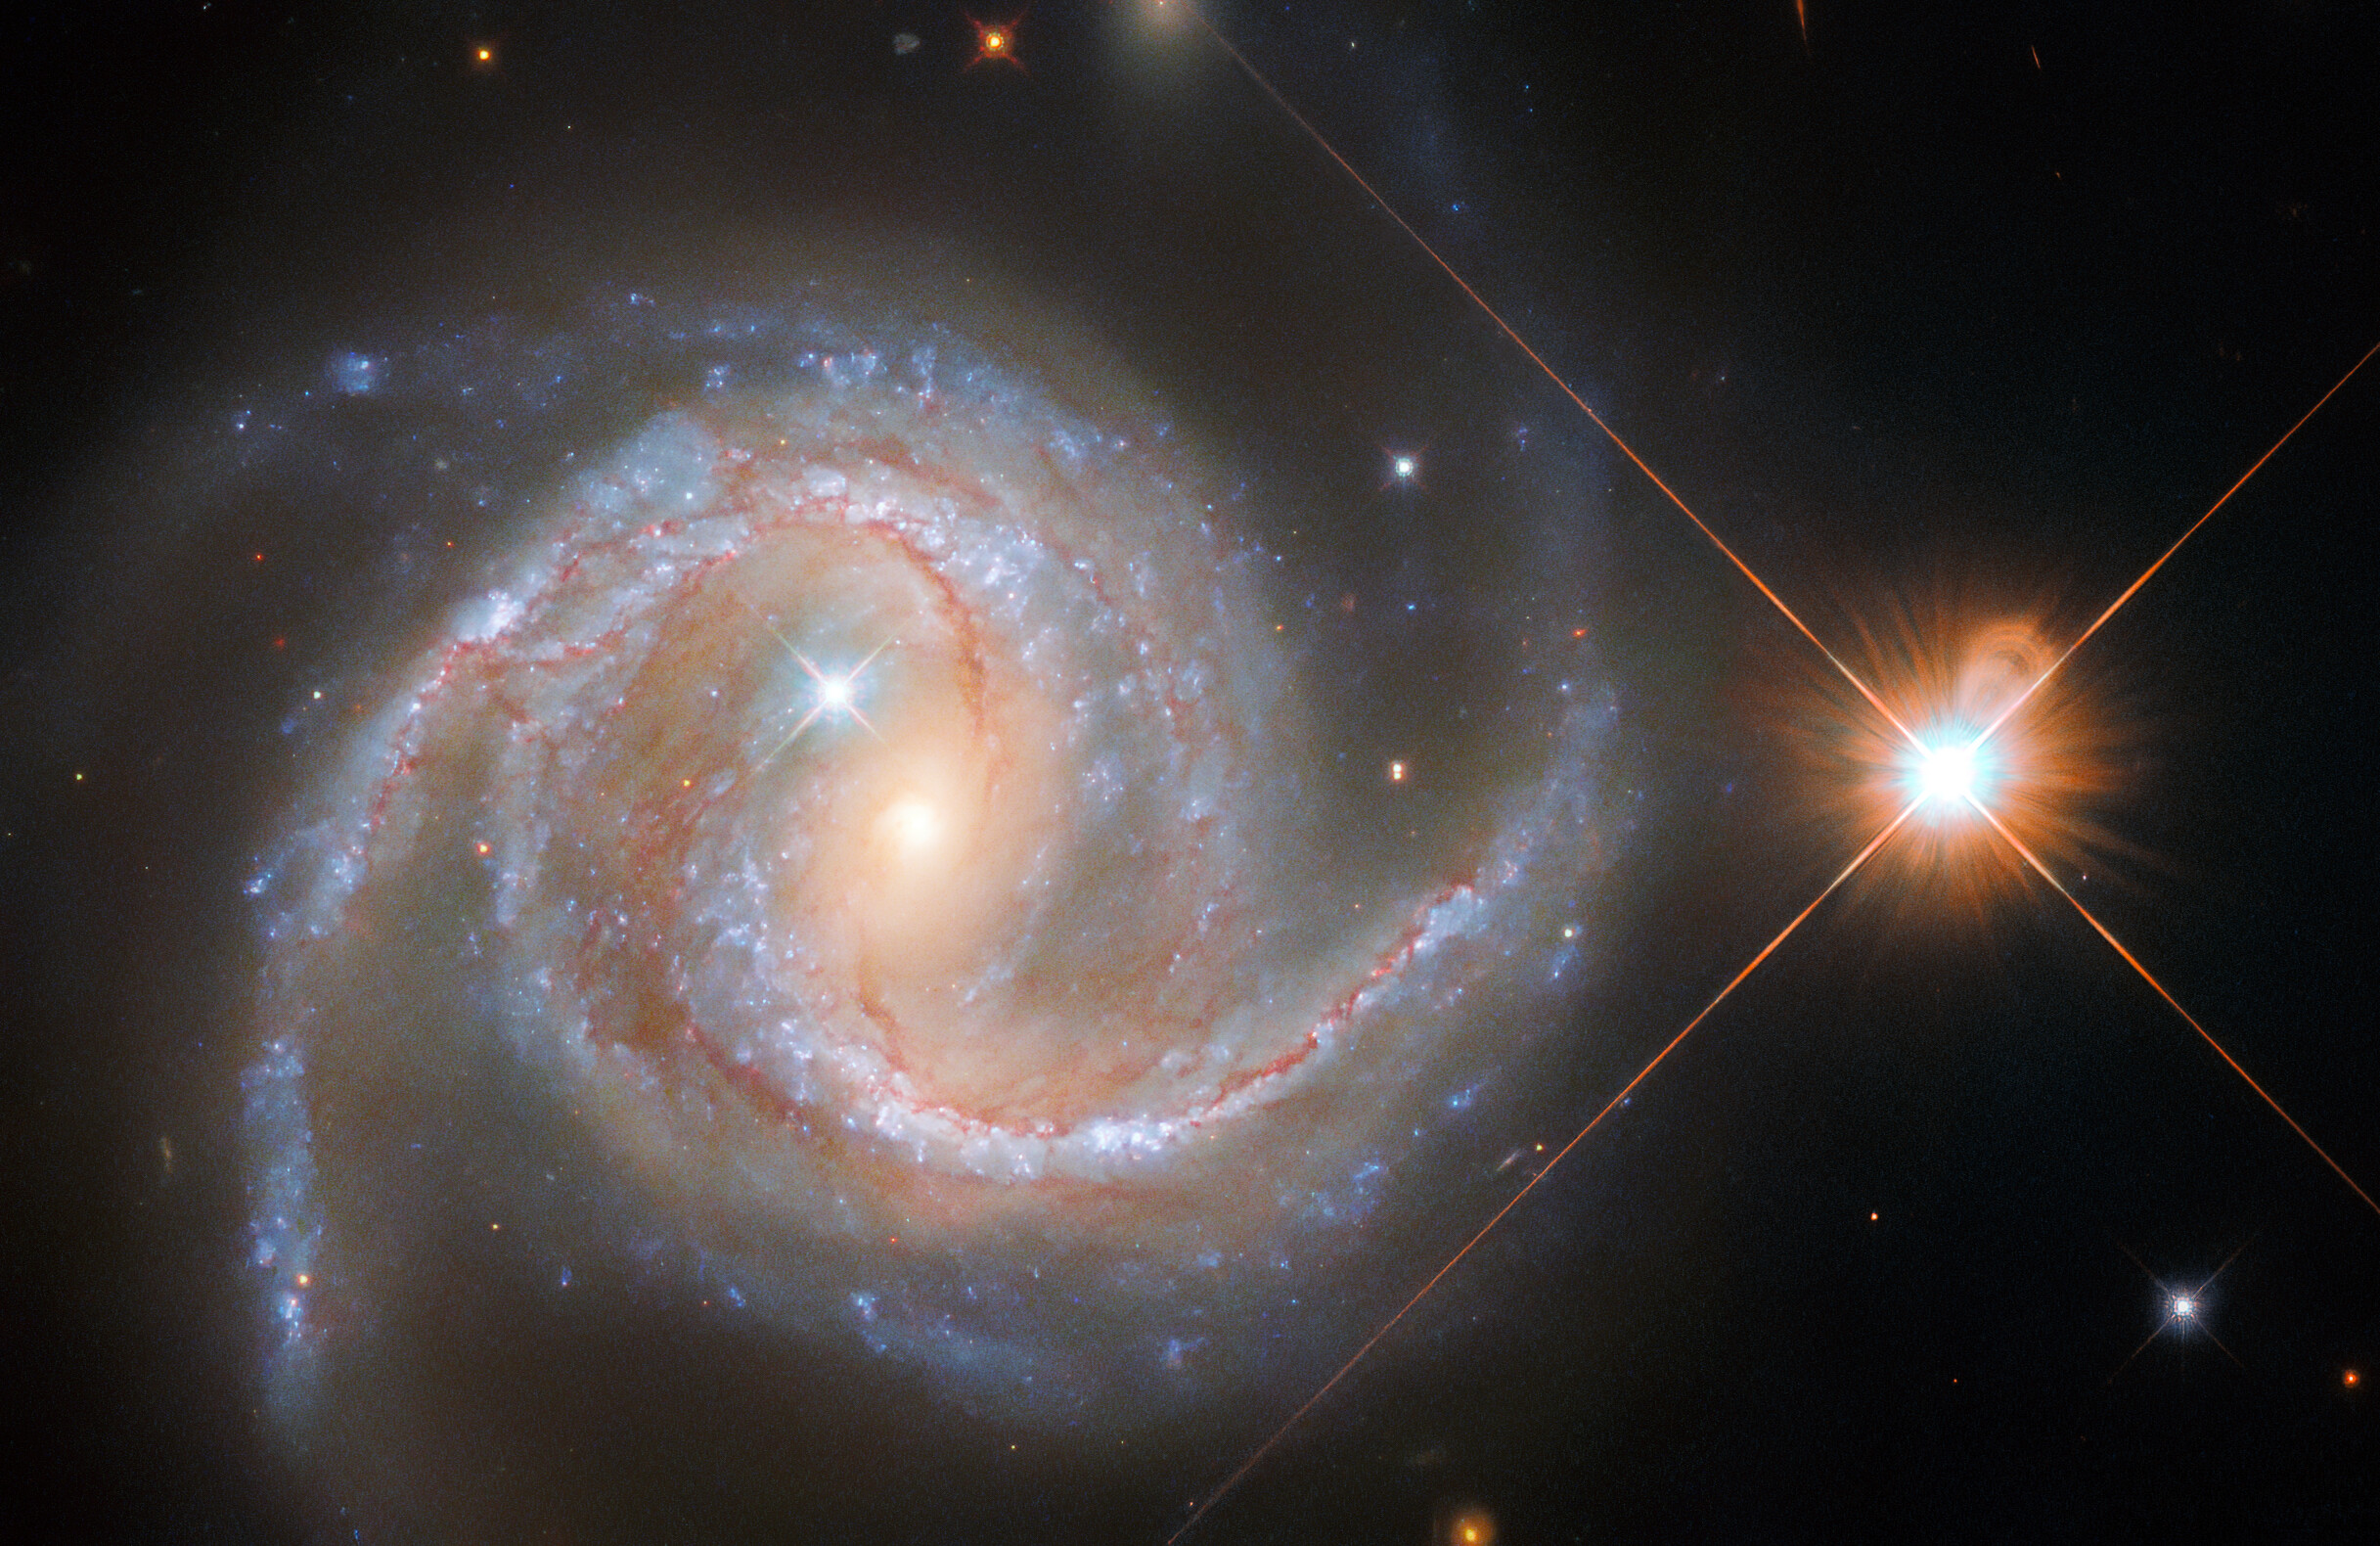 O imagine a telescopului spațial Hubble a galaxiei spirale NGC 5495 din constelația Hydra.